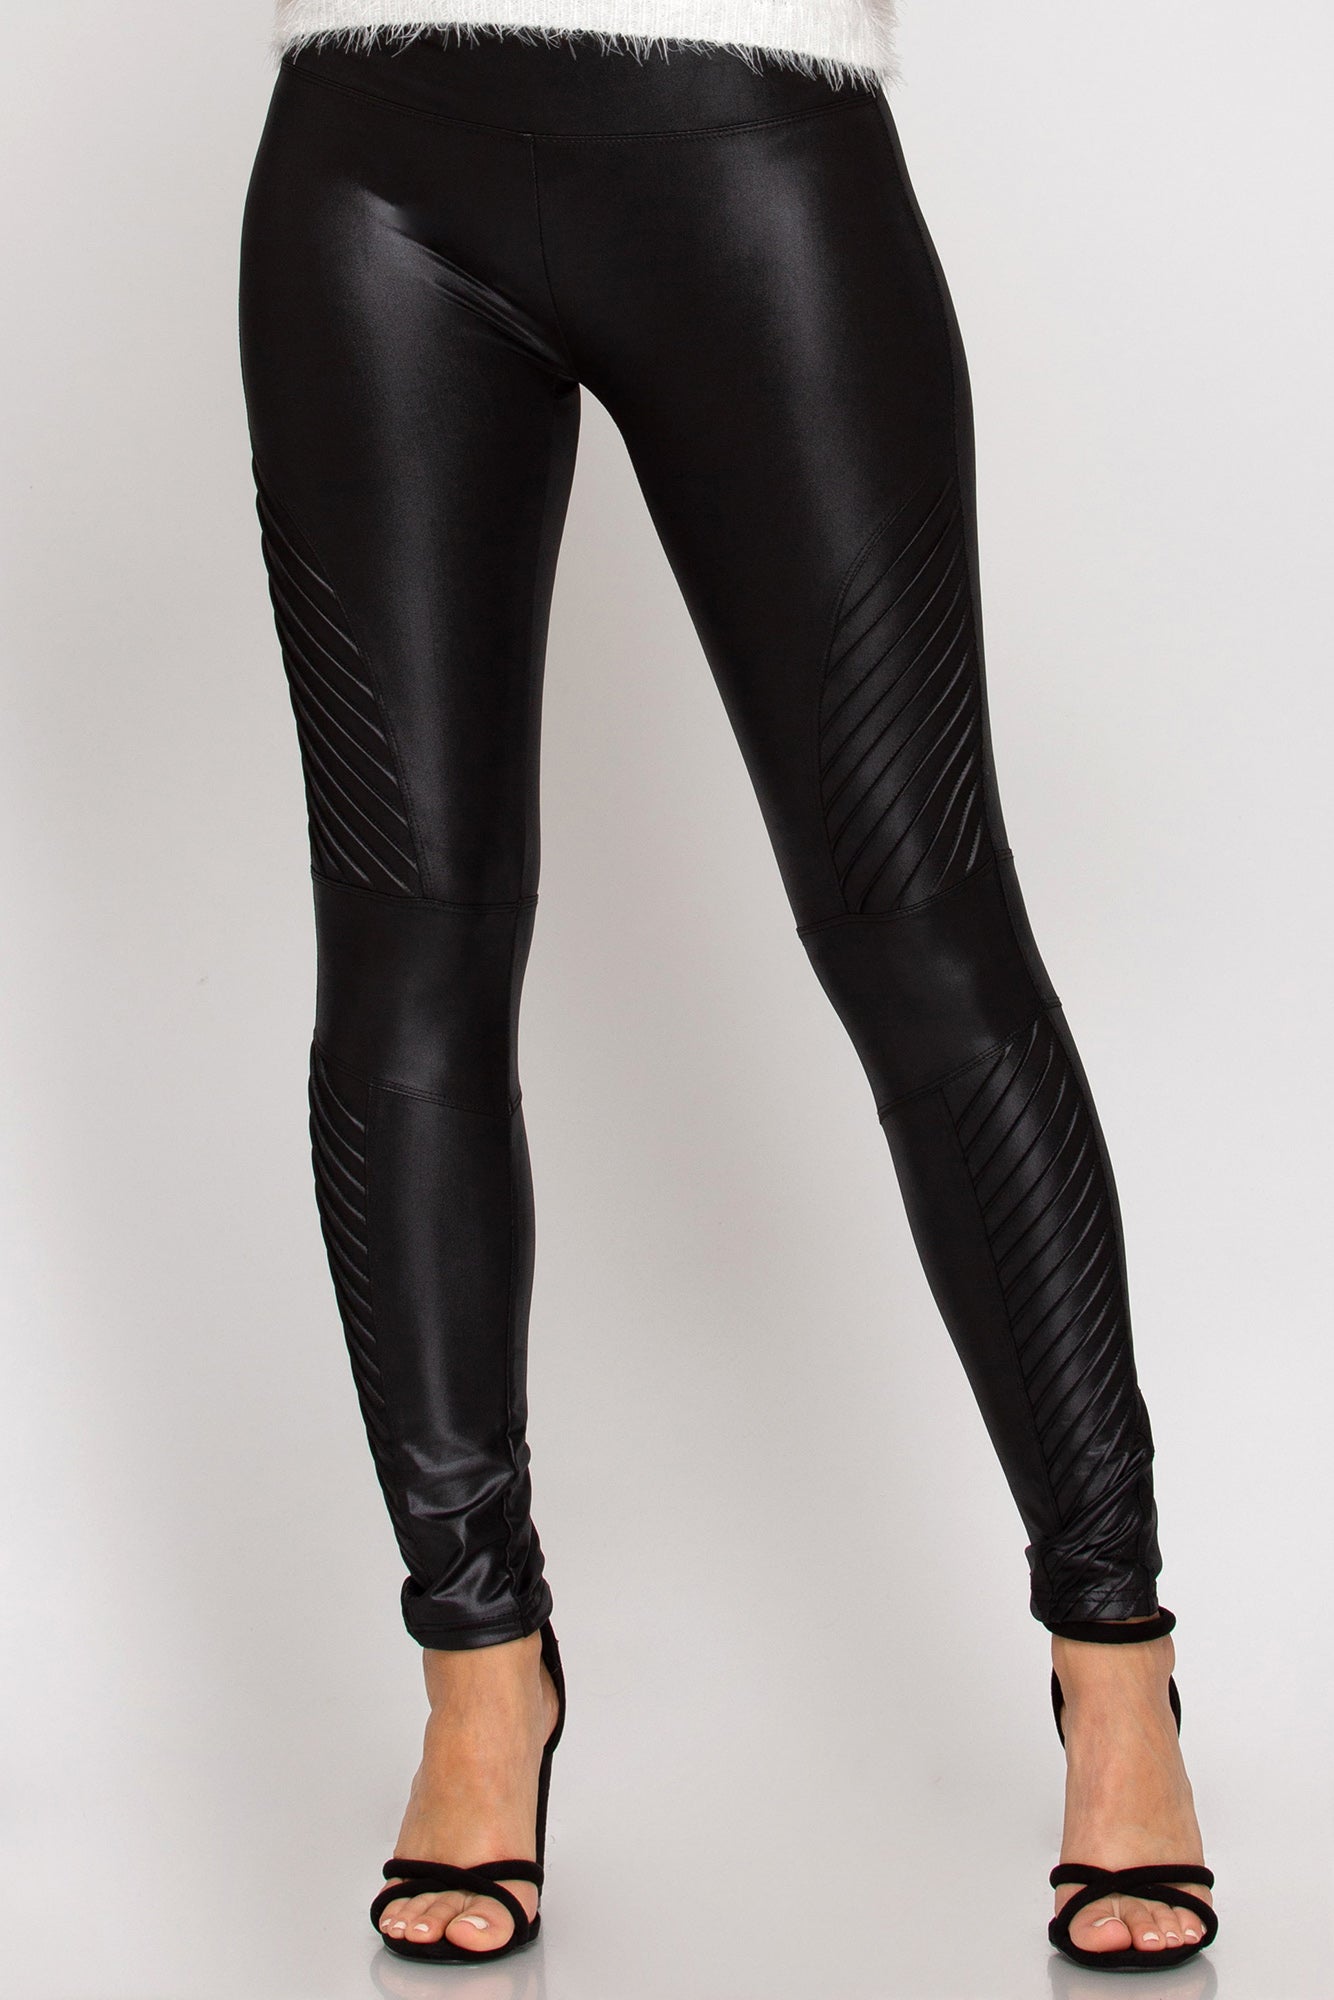 Ladies Faux Leather Thermal Leggings IN Biker Style Black #H2236